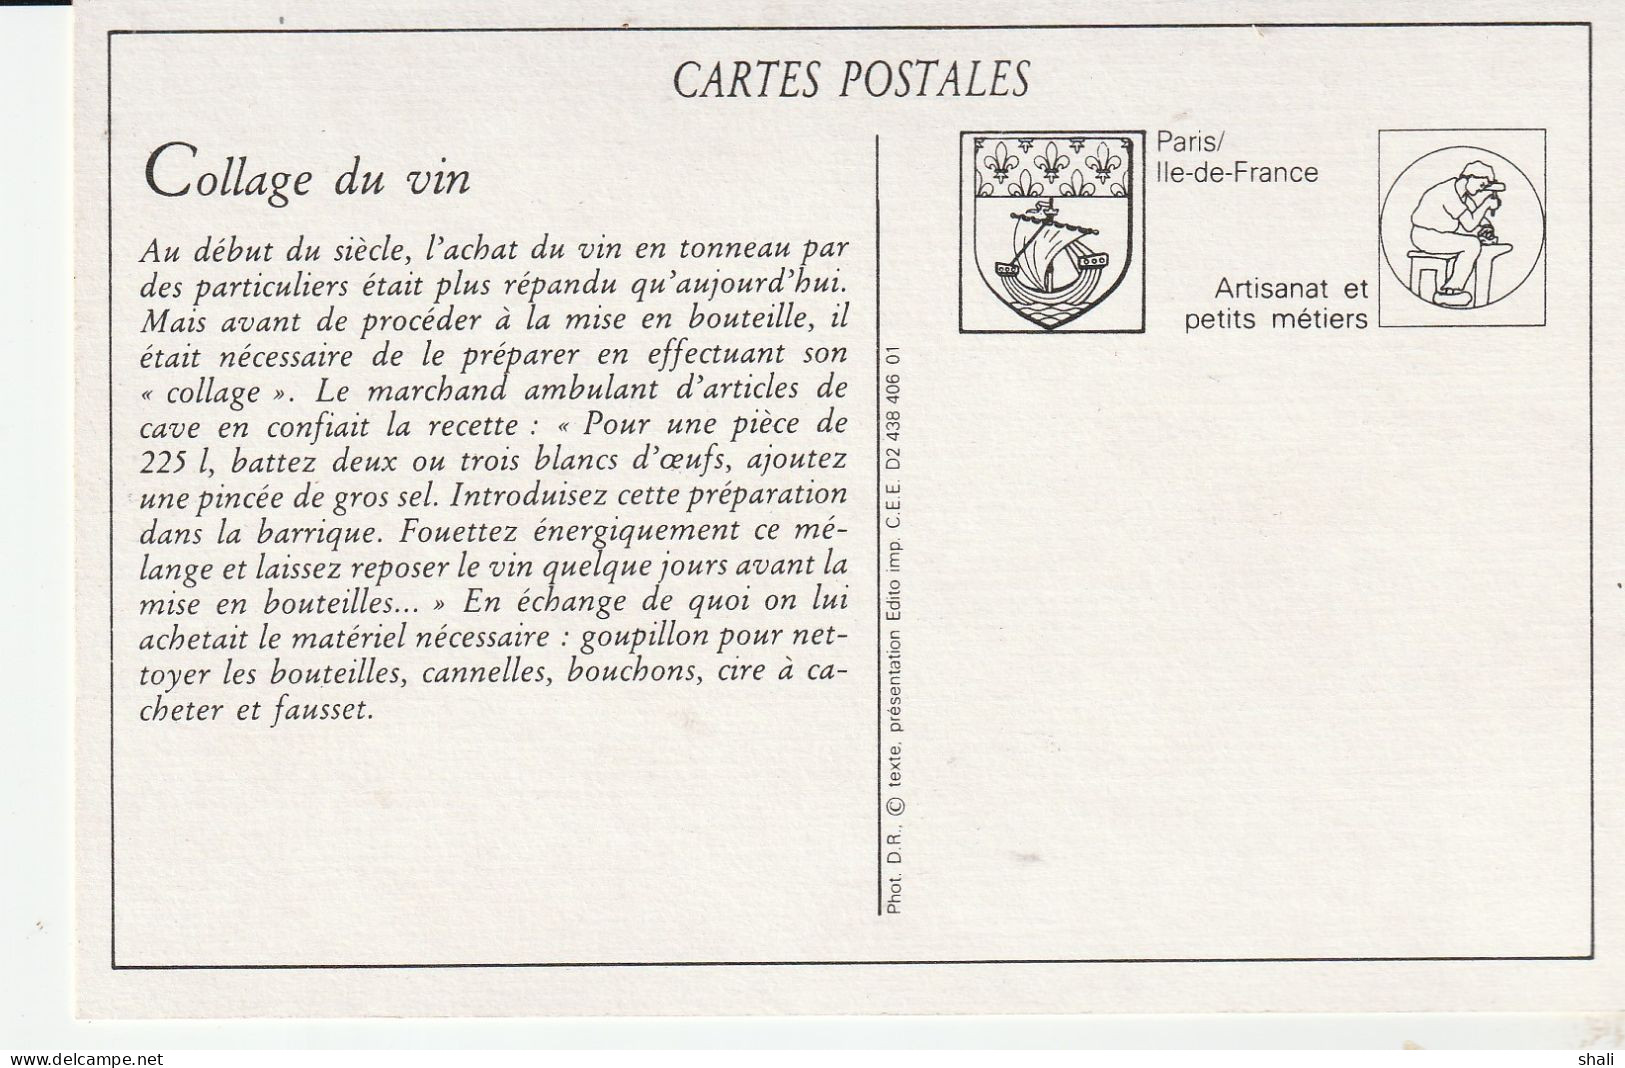 COPIE DE CARTE POSTALE ANCIENNE MARCHANDS D' ARTICLES DE CAVES - Venters